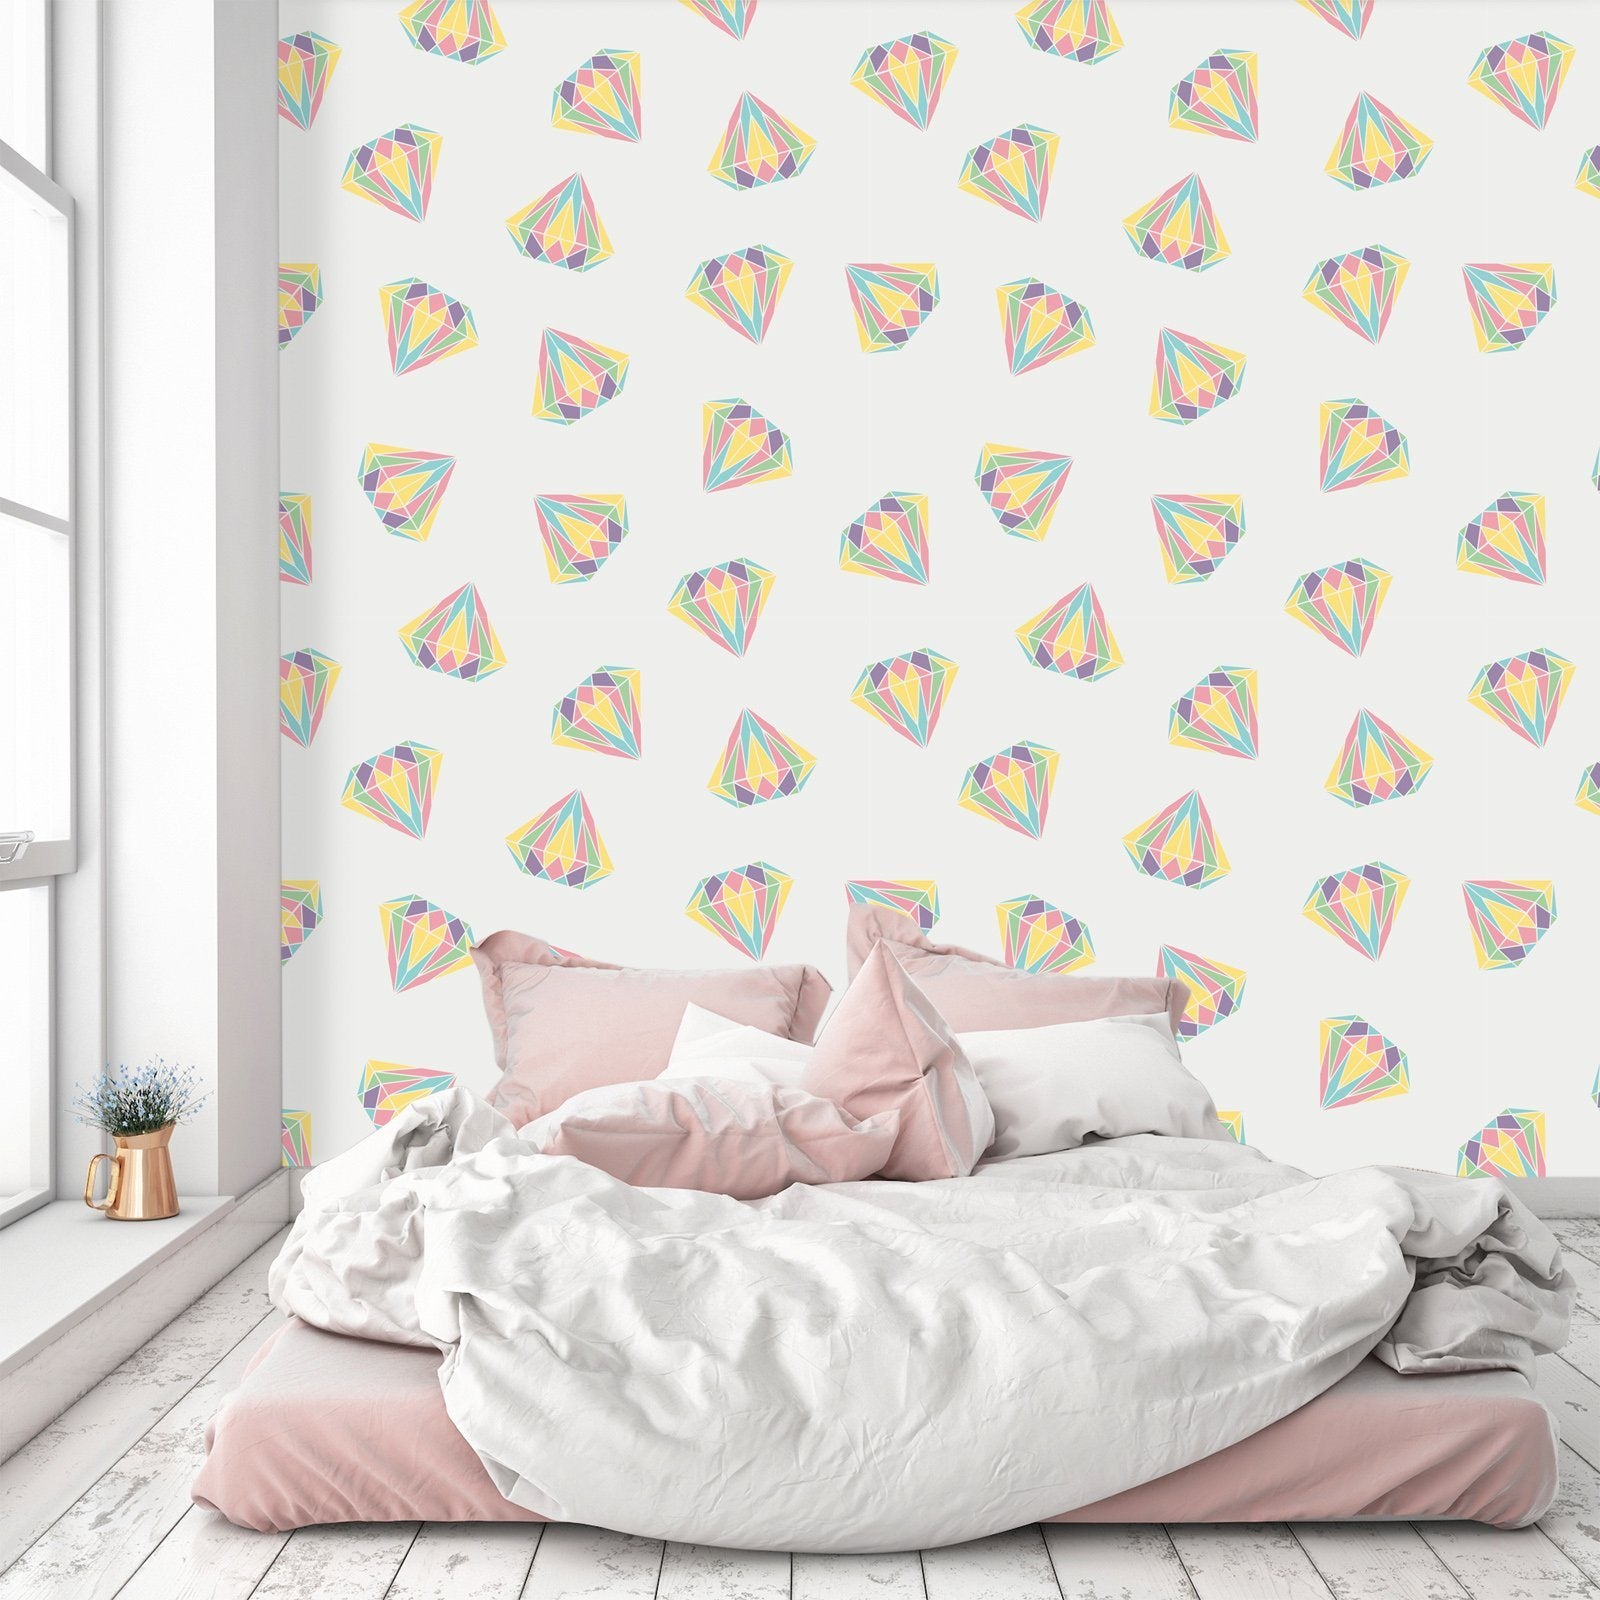 3D Colorful Diamond Pattern 600 Wallpaper AJ Wallpaper 